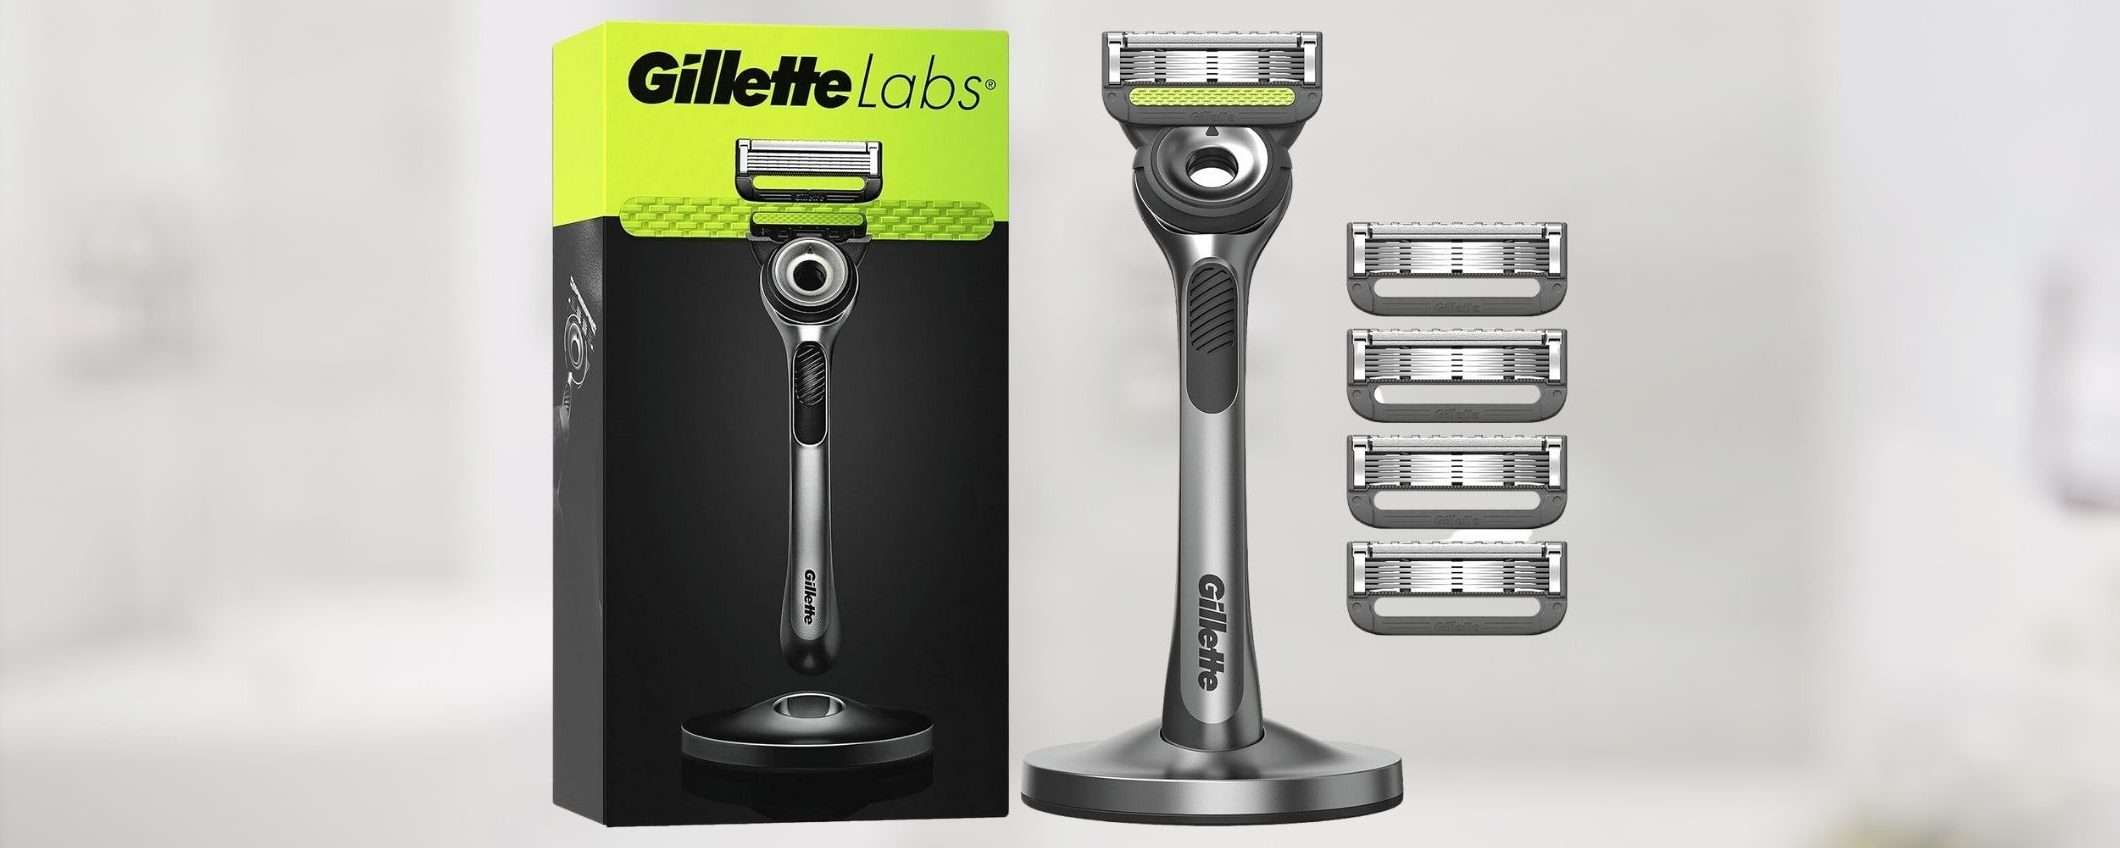 Rasoio Gillette Labs con 5 LAMETTE DI RICAMBIO a 29,99 euro (sconto del 30%)